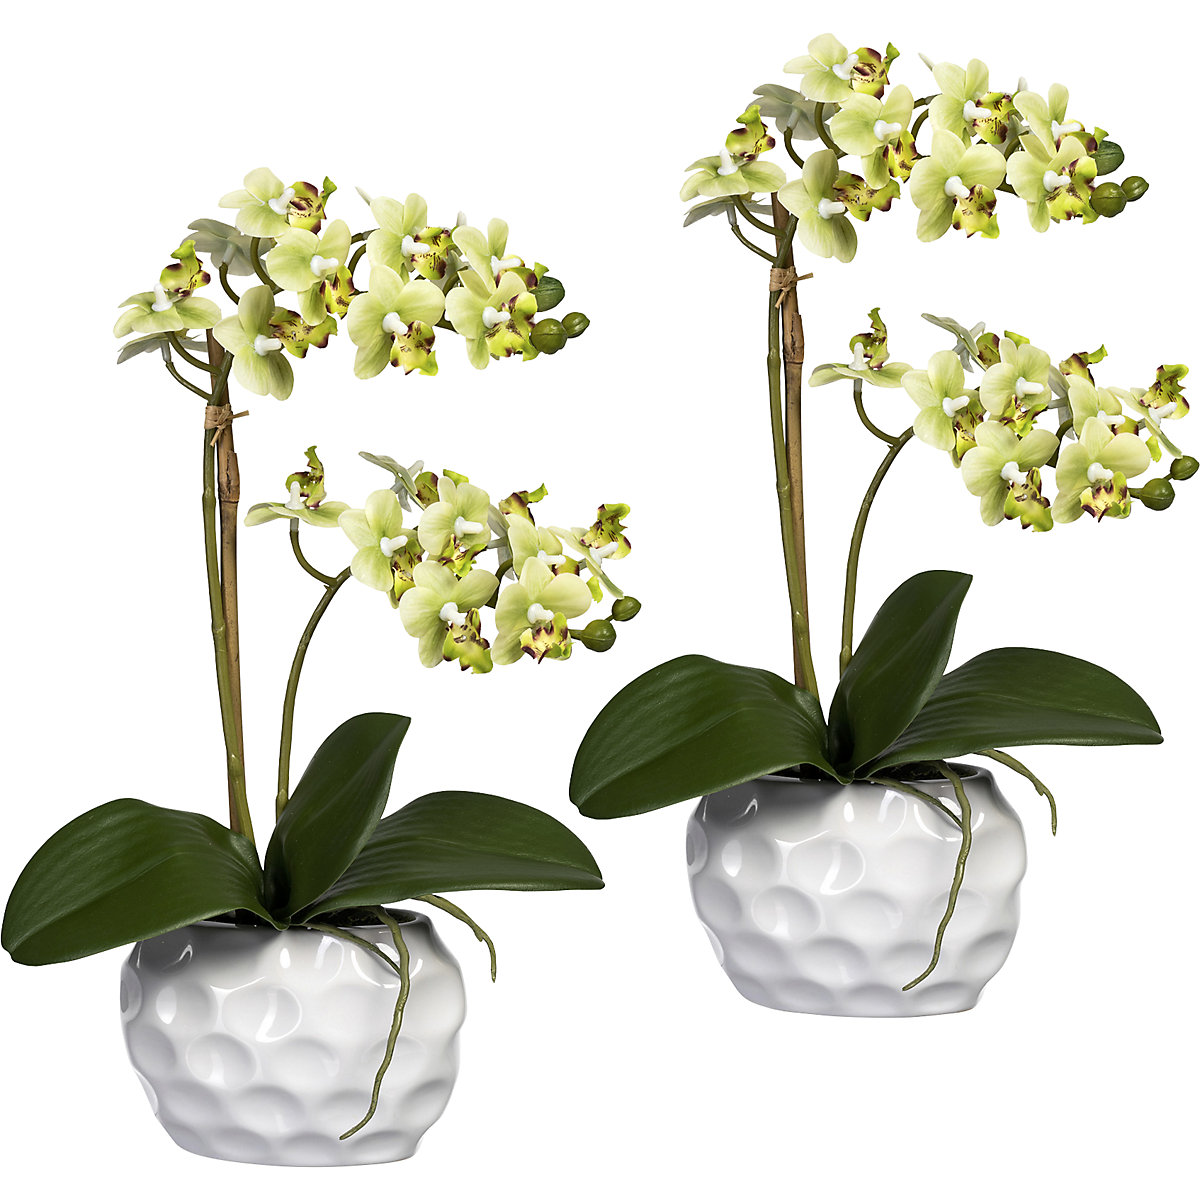 Bianco 2 Olrla Bianco phalaenopsis Artificiale Orchid Bonsai con Vaso di Ceramica Wedding Party Garden Home Decor 